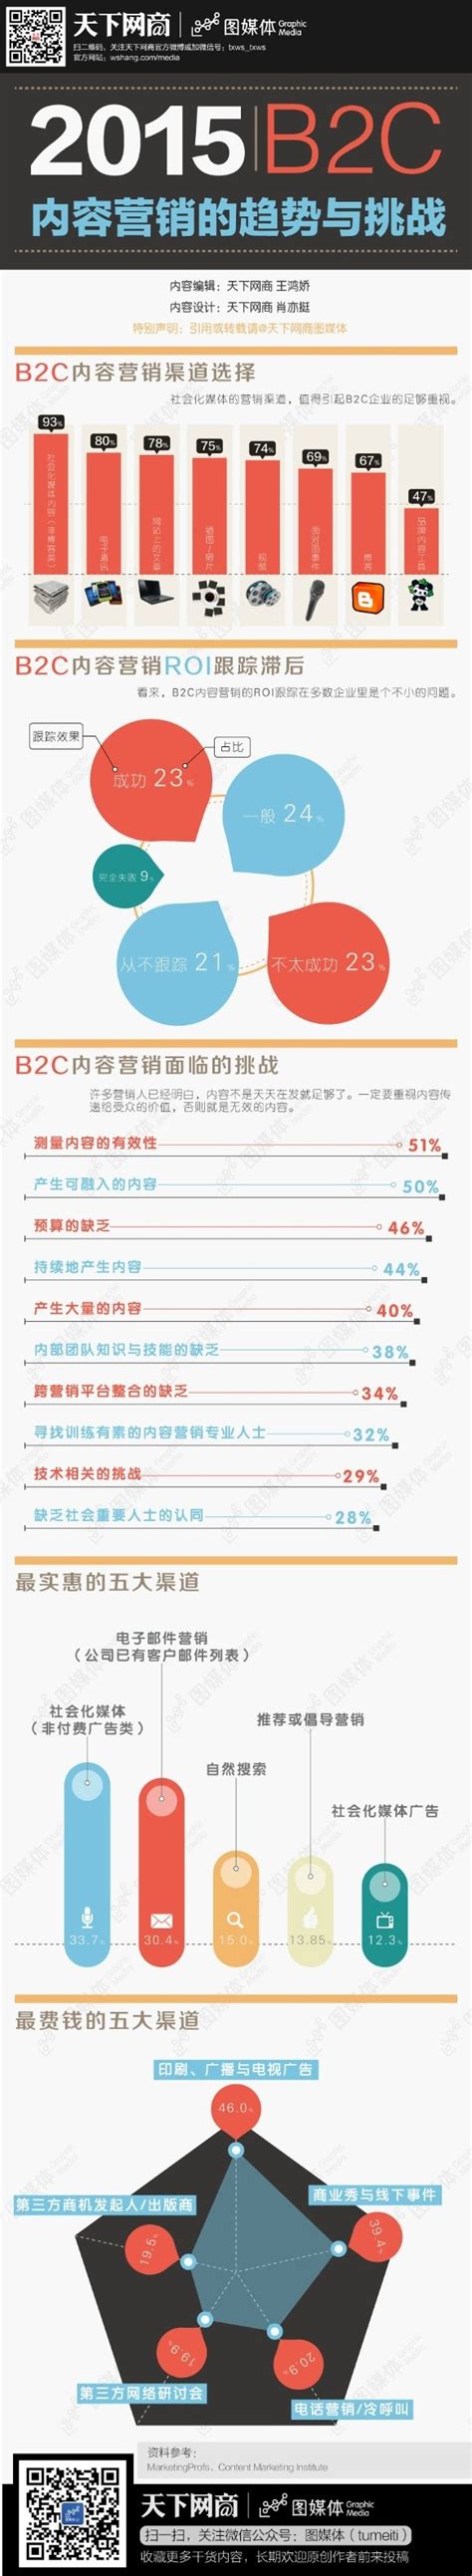 《中国汽配B2B行业发展报告》（2016）_艾瑞专栏_艾瑞网